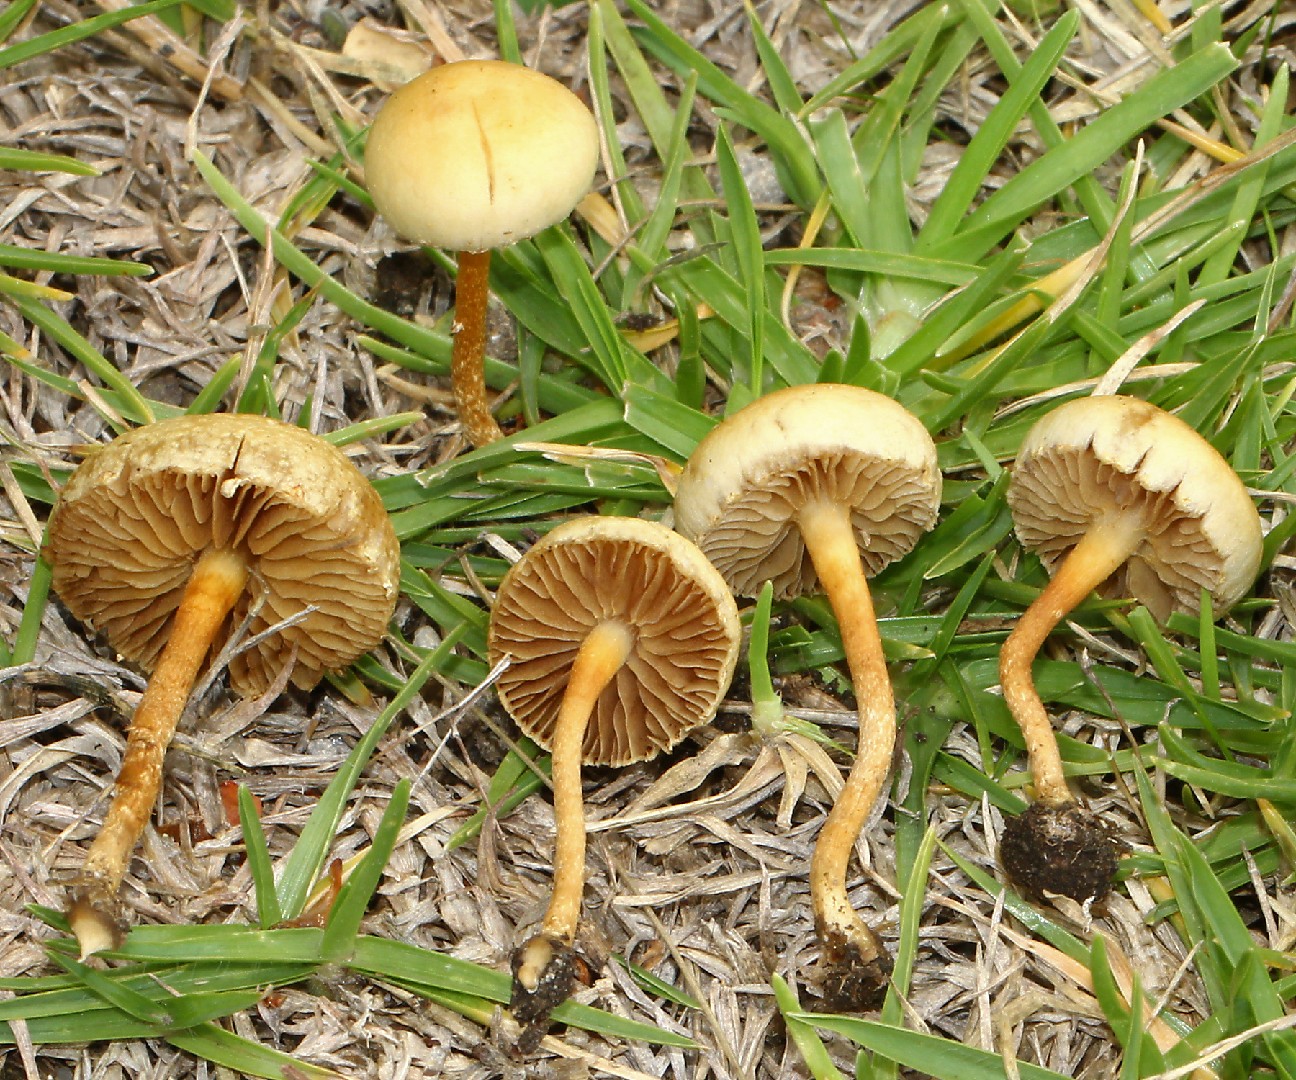 Common fieldcap (Agrocybe pediades)